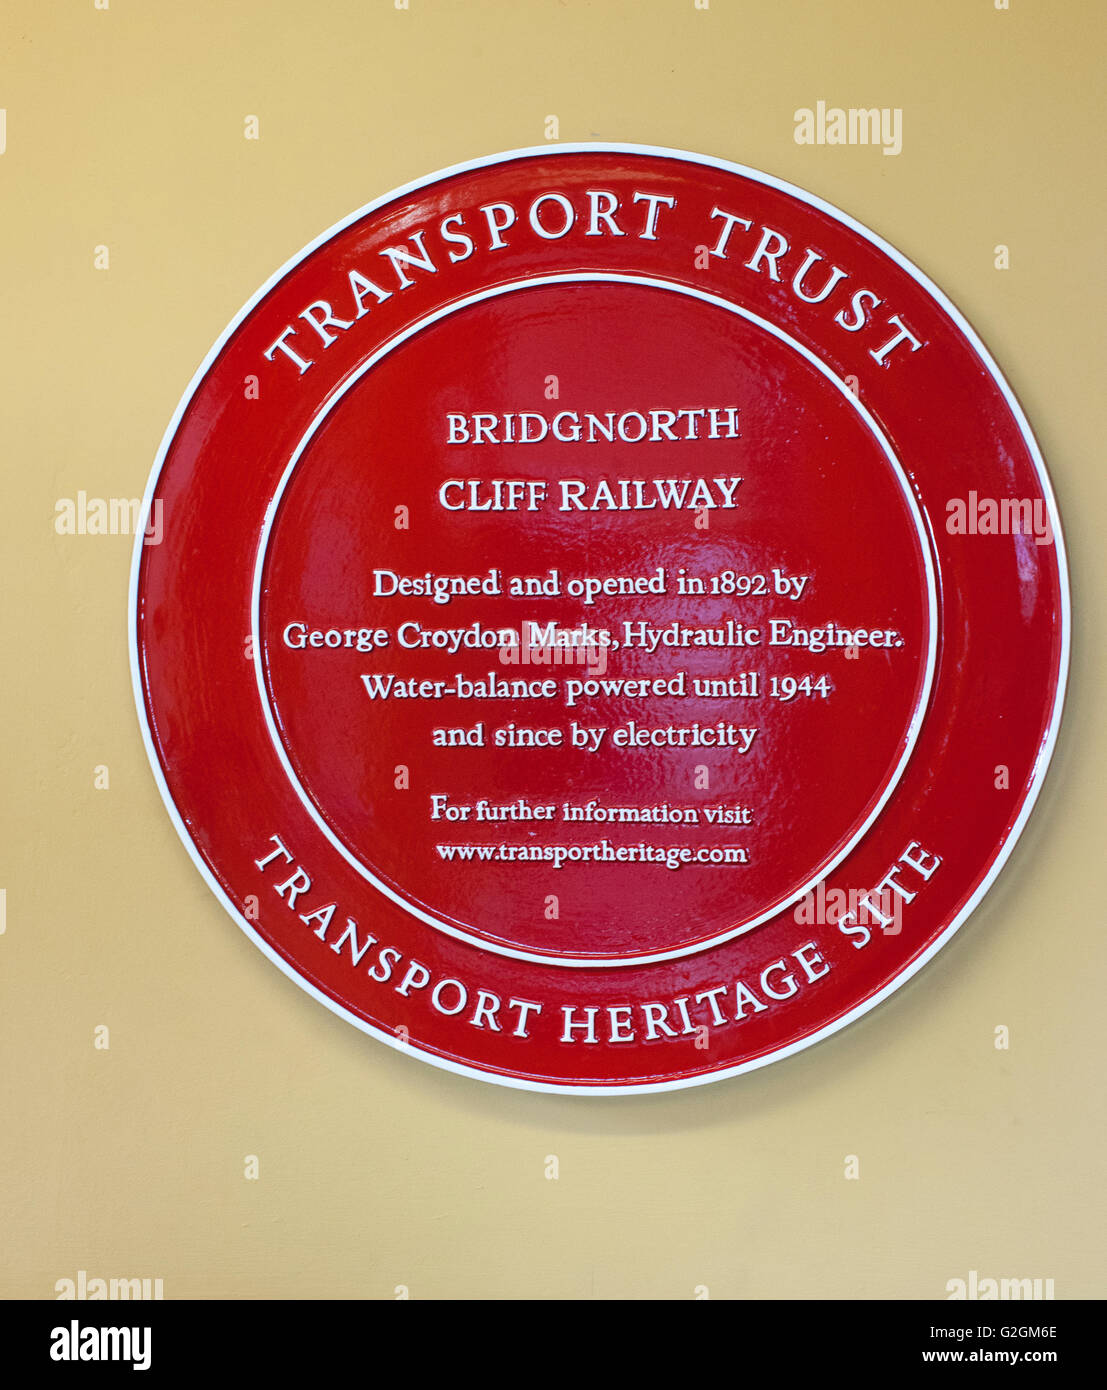 Site du patrimoine Transport plaque rouge à Bridgnorth Cliff Railway, Bridgnorth, Shropshire, England, UK Banque D'Images